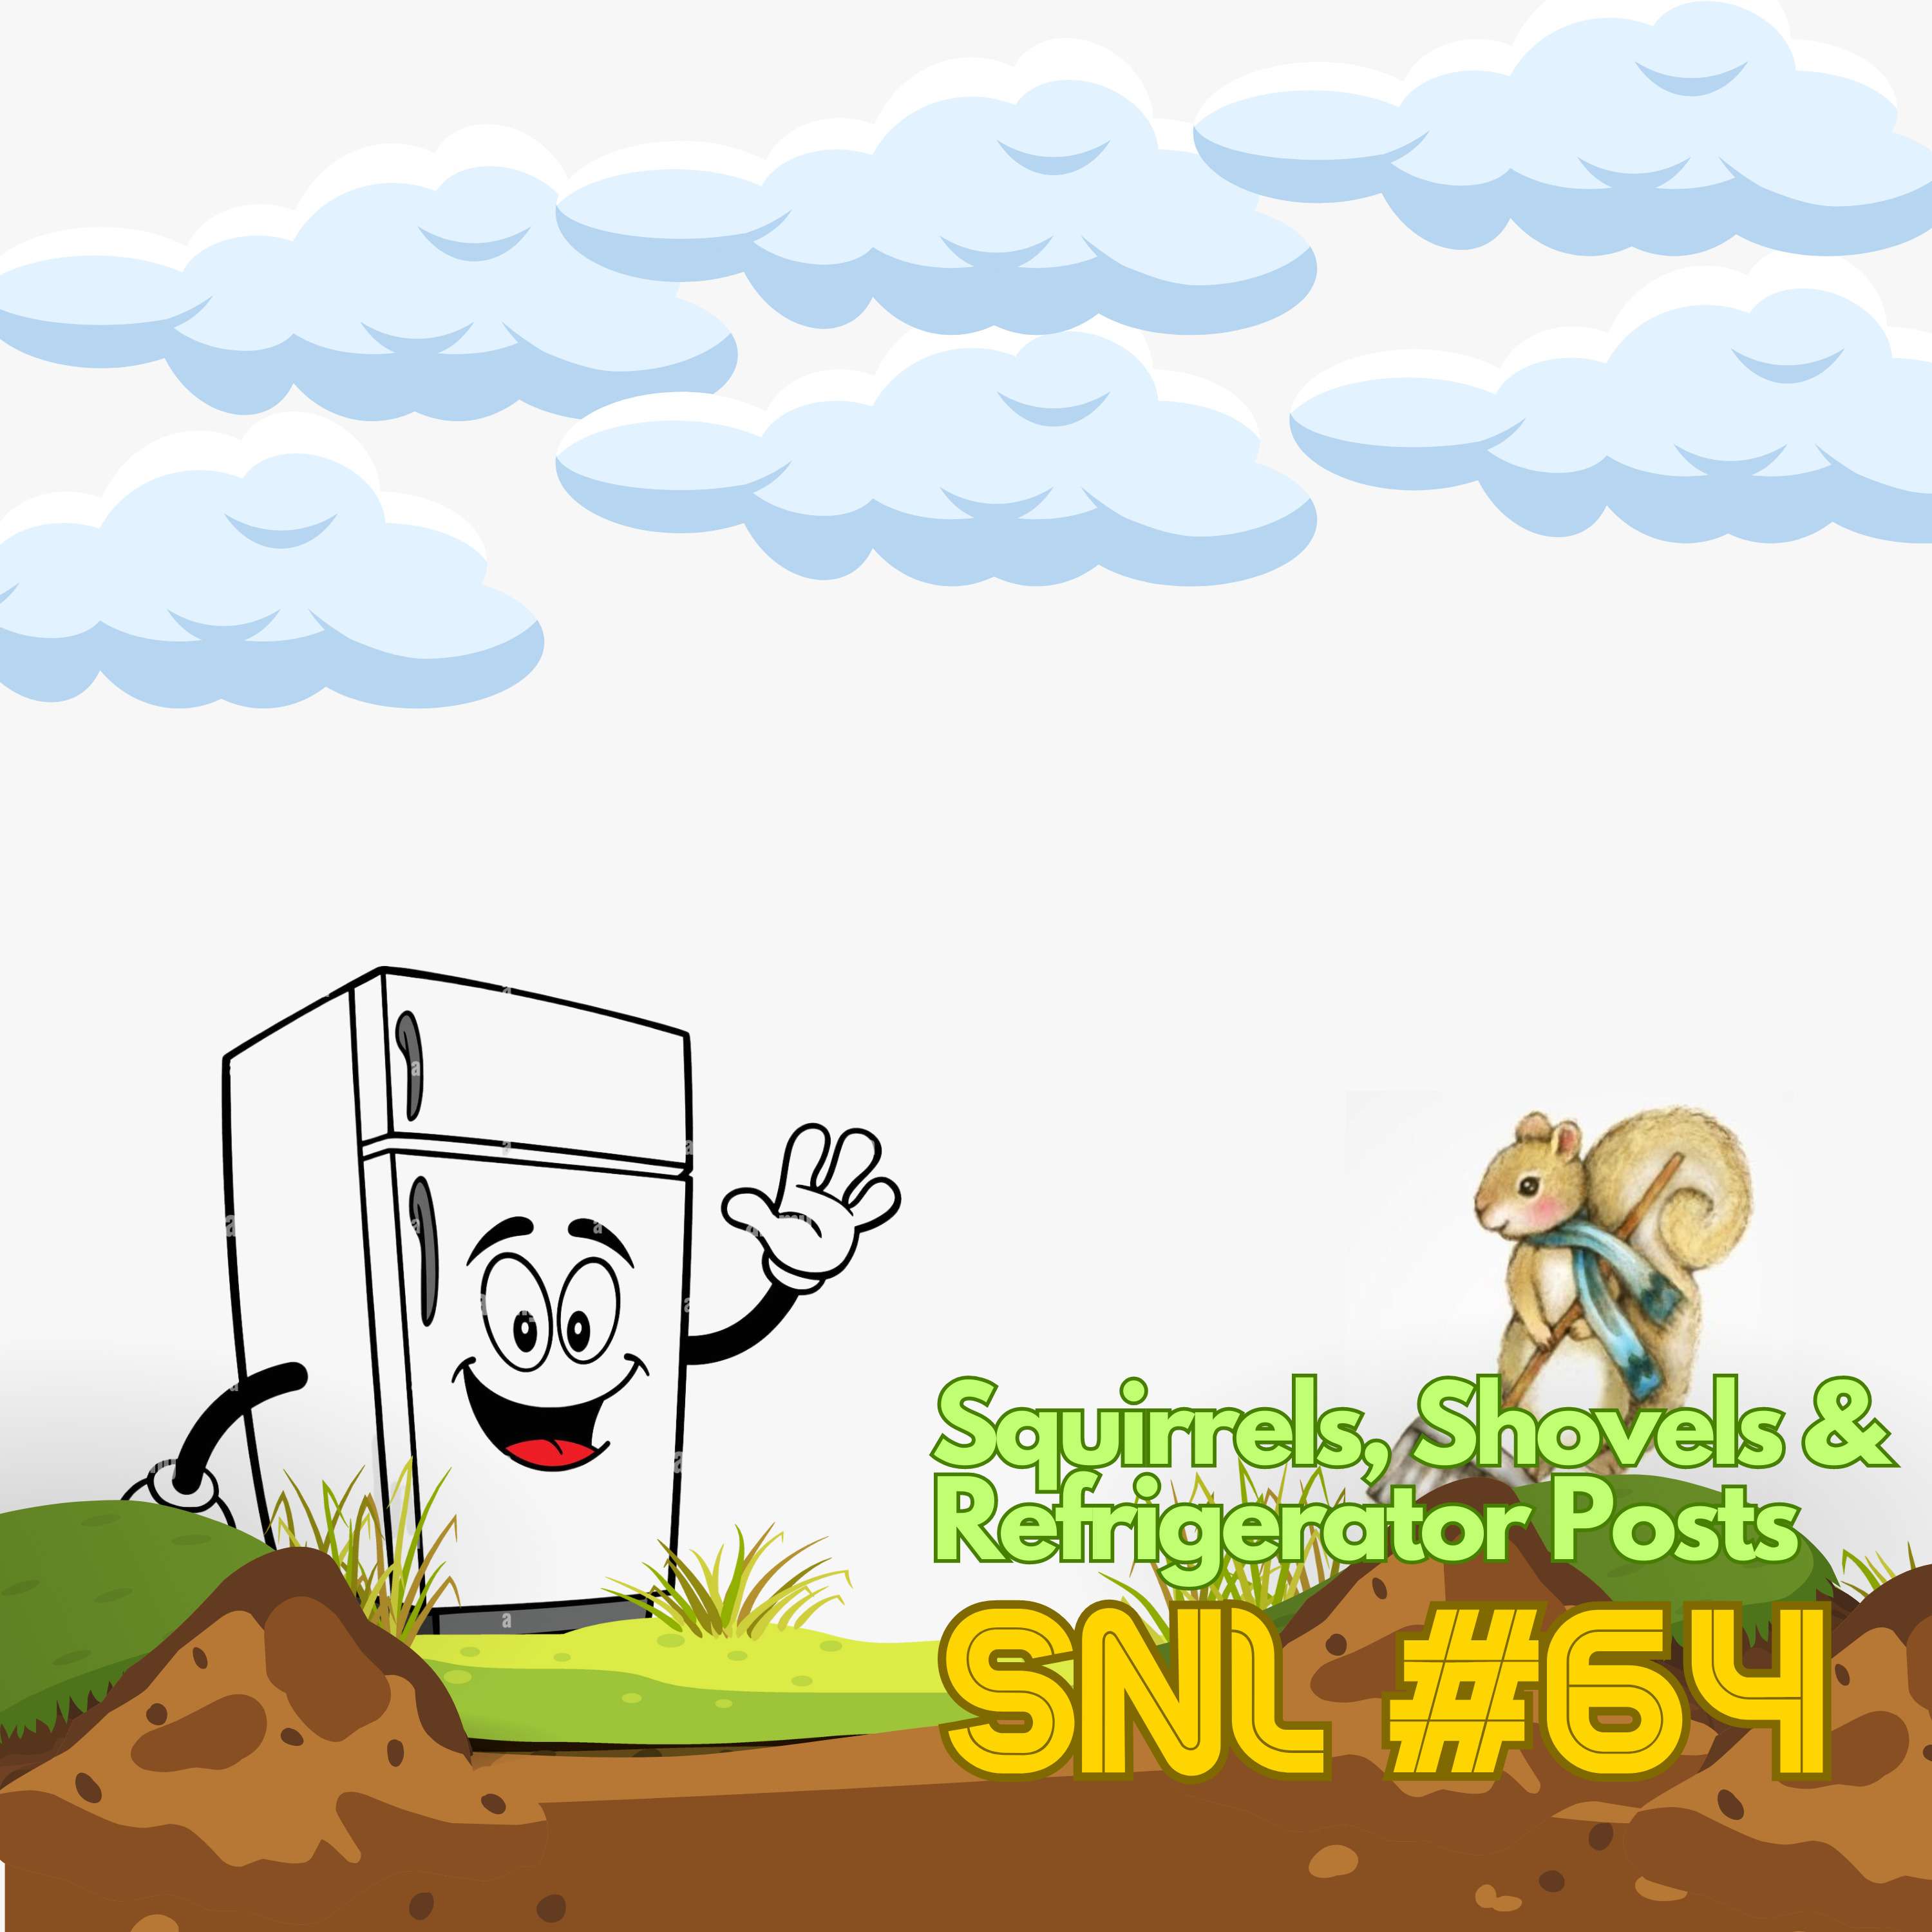 SNL #64: Squirrels, Shovels & Refrigerator Posts